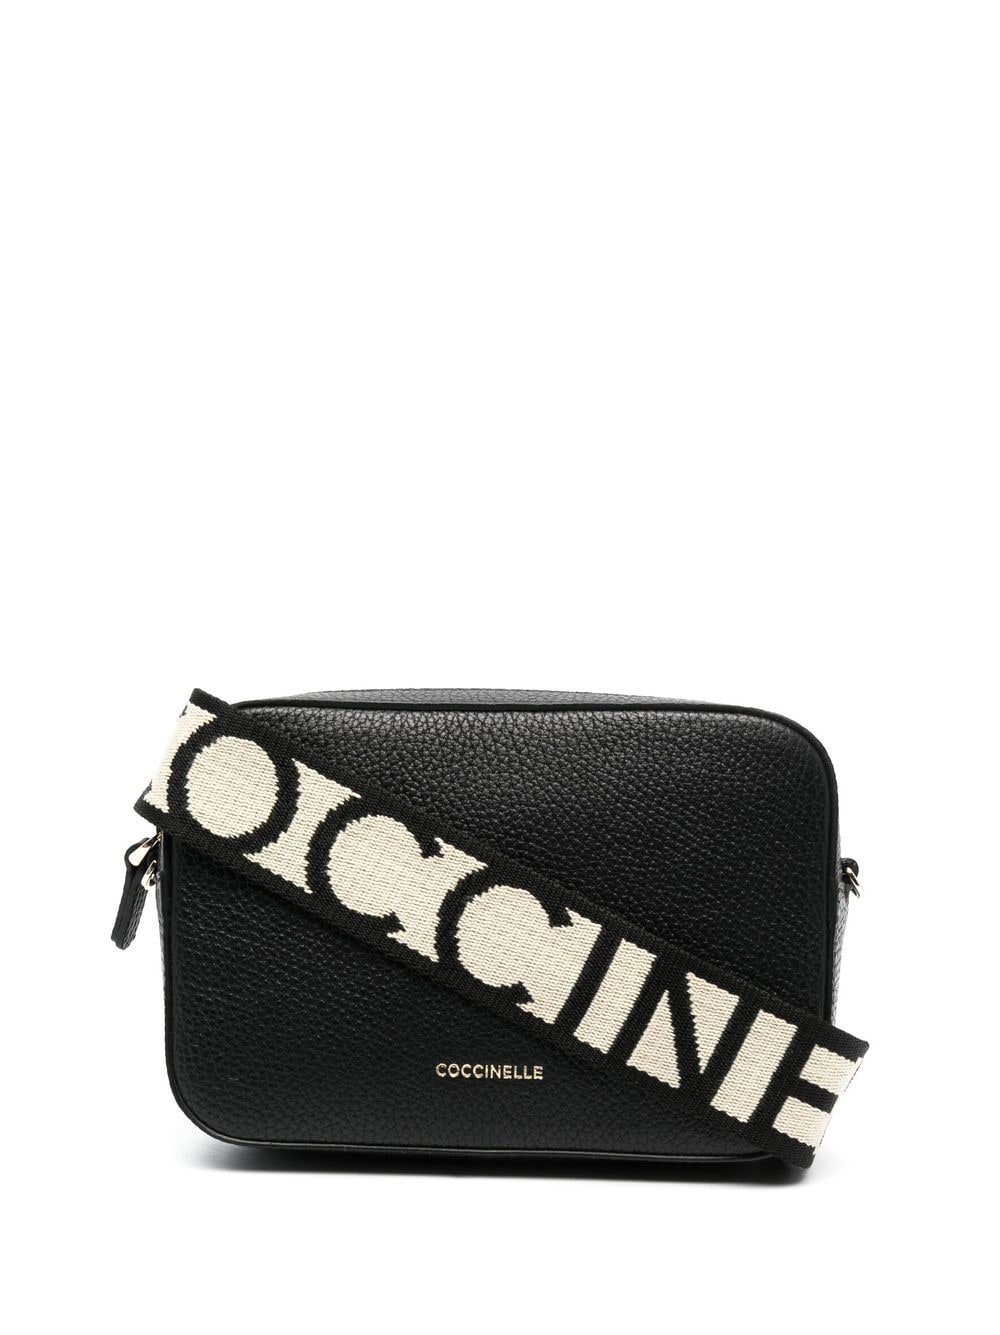 Coccinelle logo-plaque leather satchel bag - Black von Coccinelle